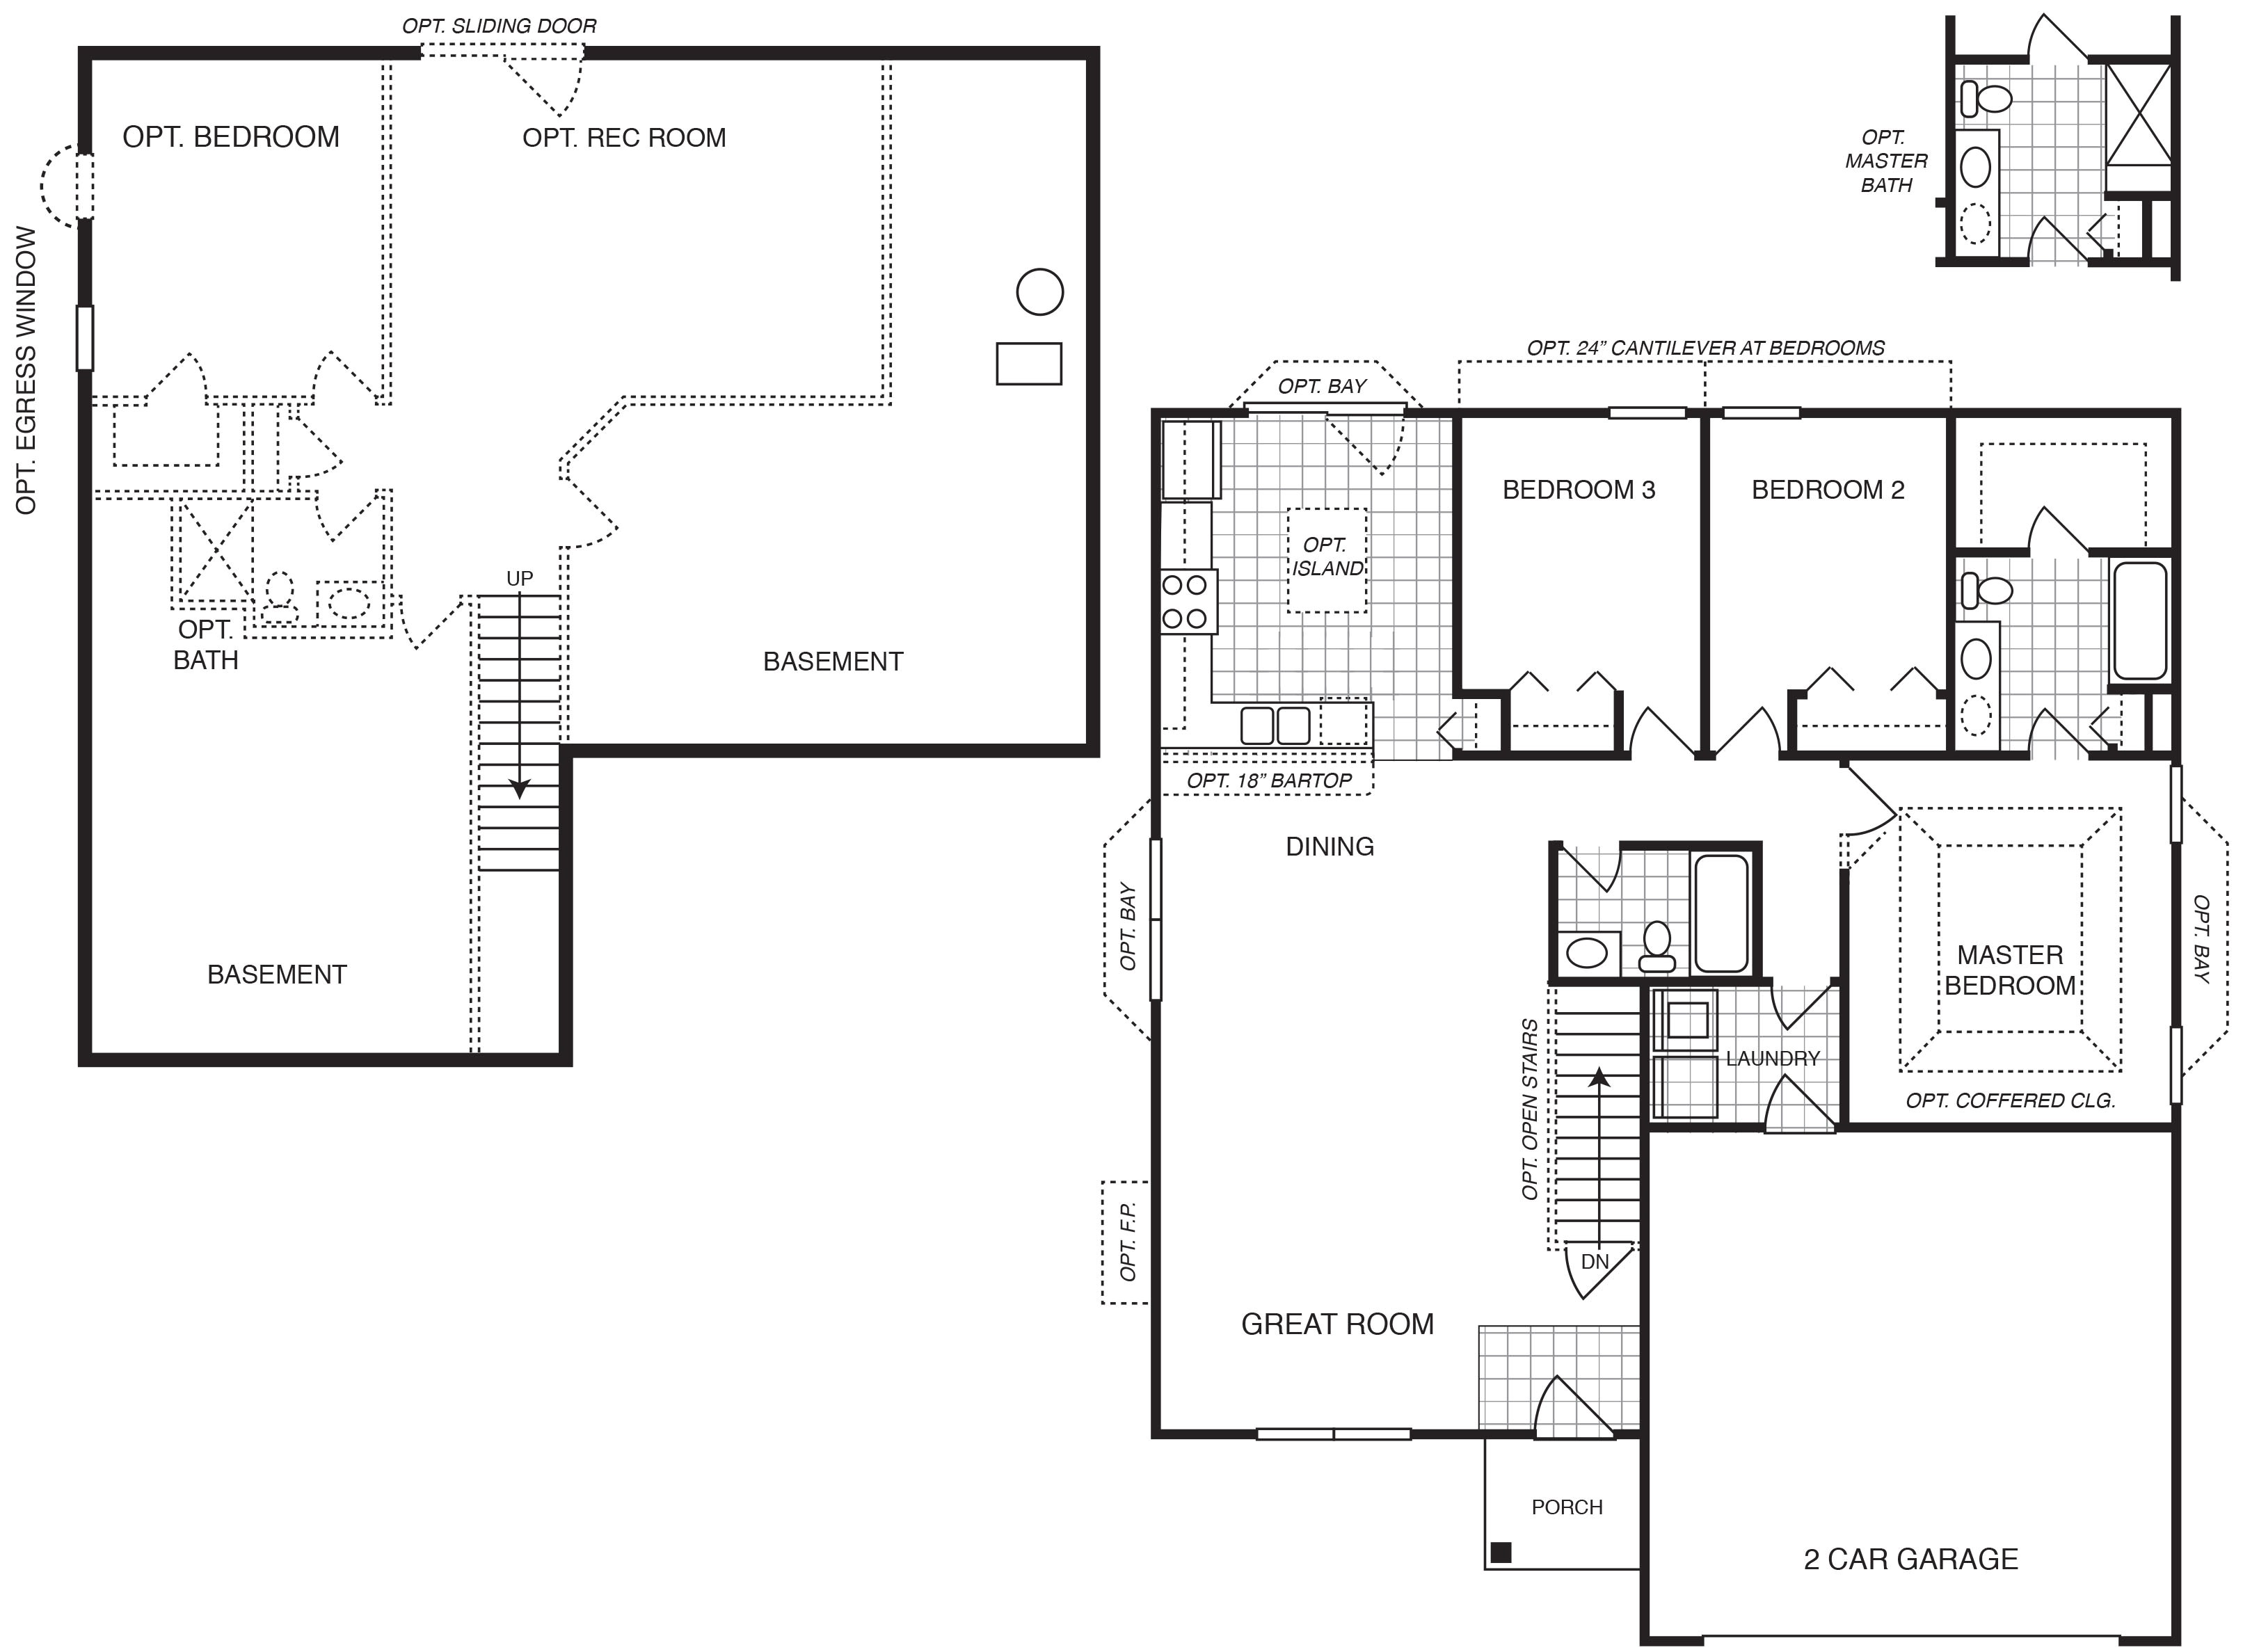 Custom Home Builder Floor Plans Best Of Custom Home Builder Floor Plans House Floor Ideas